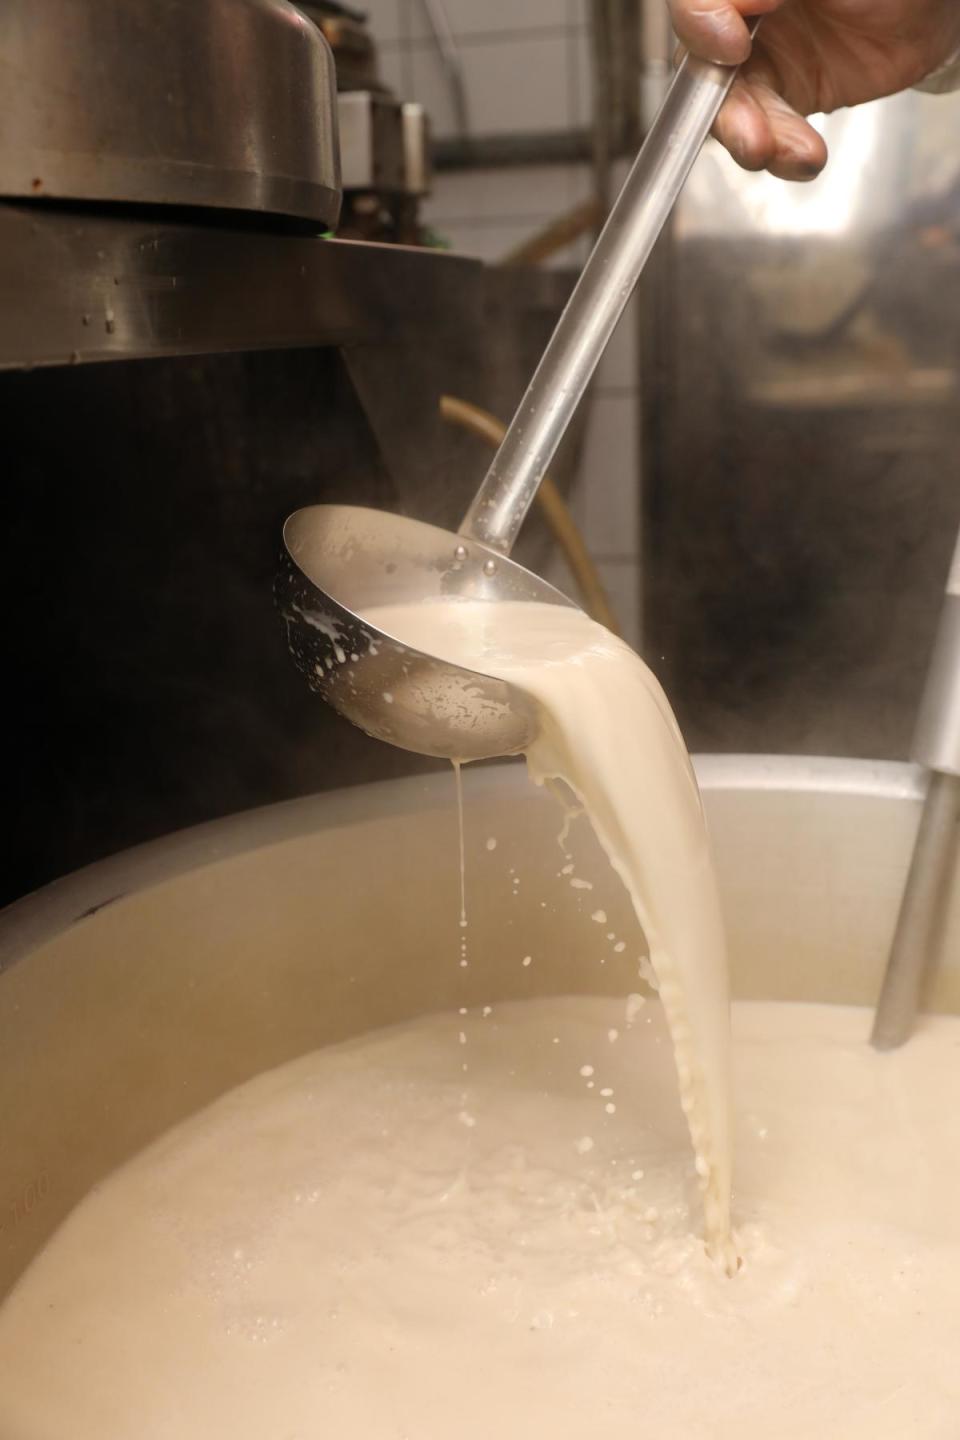 曾有對牛奶過敏的客人質疑老闆湯頭有加牛奶才有這種色澤，以身試湯後成主顧。